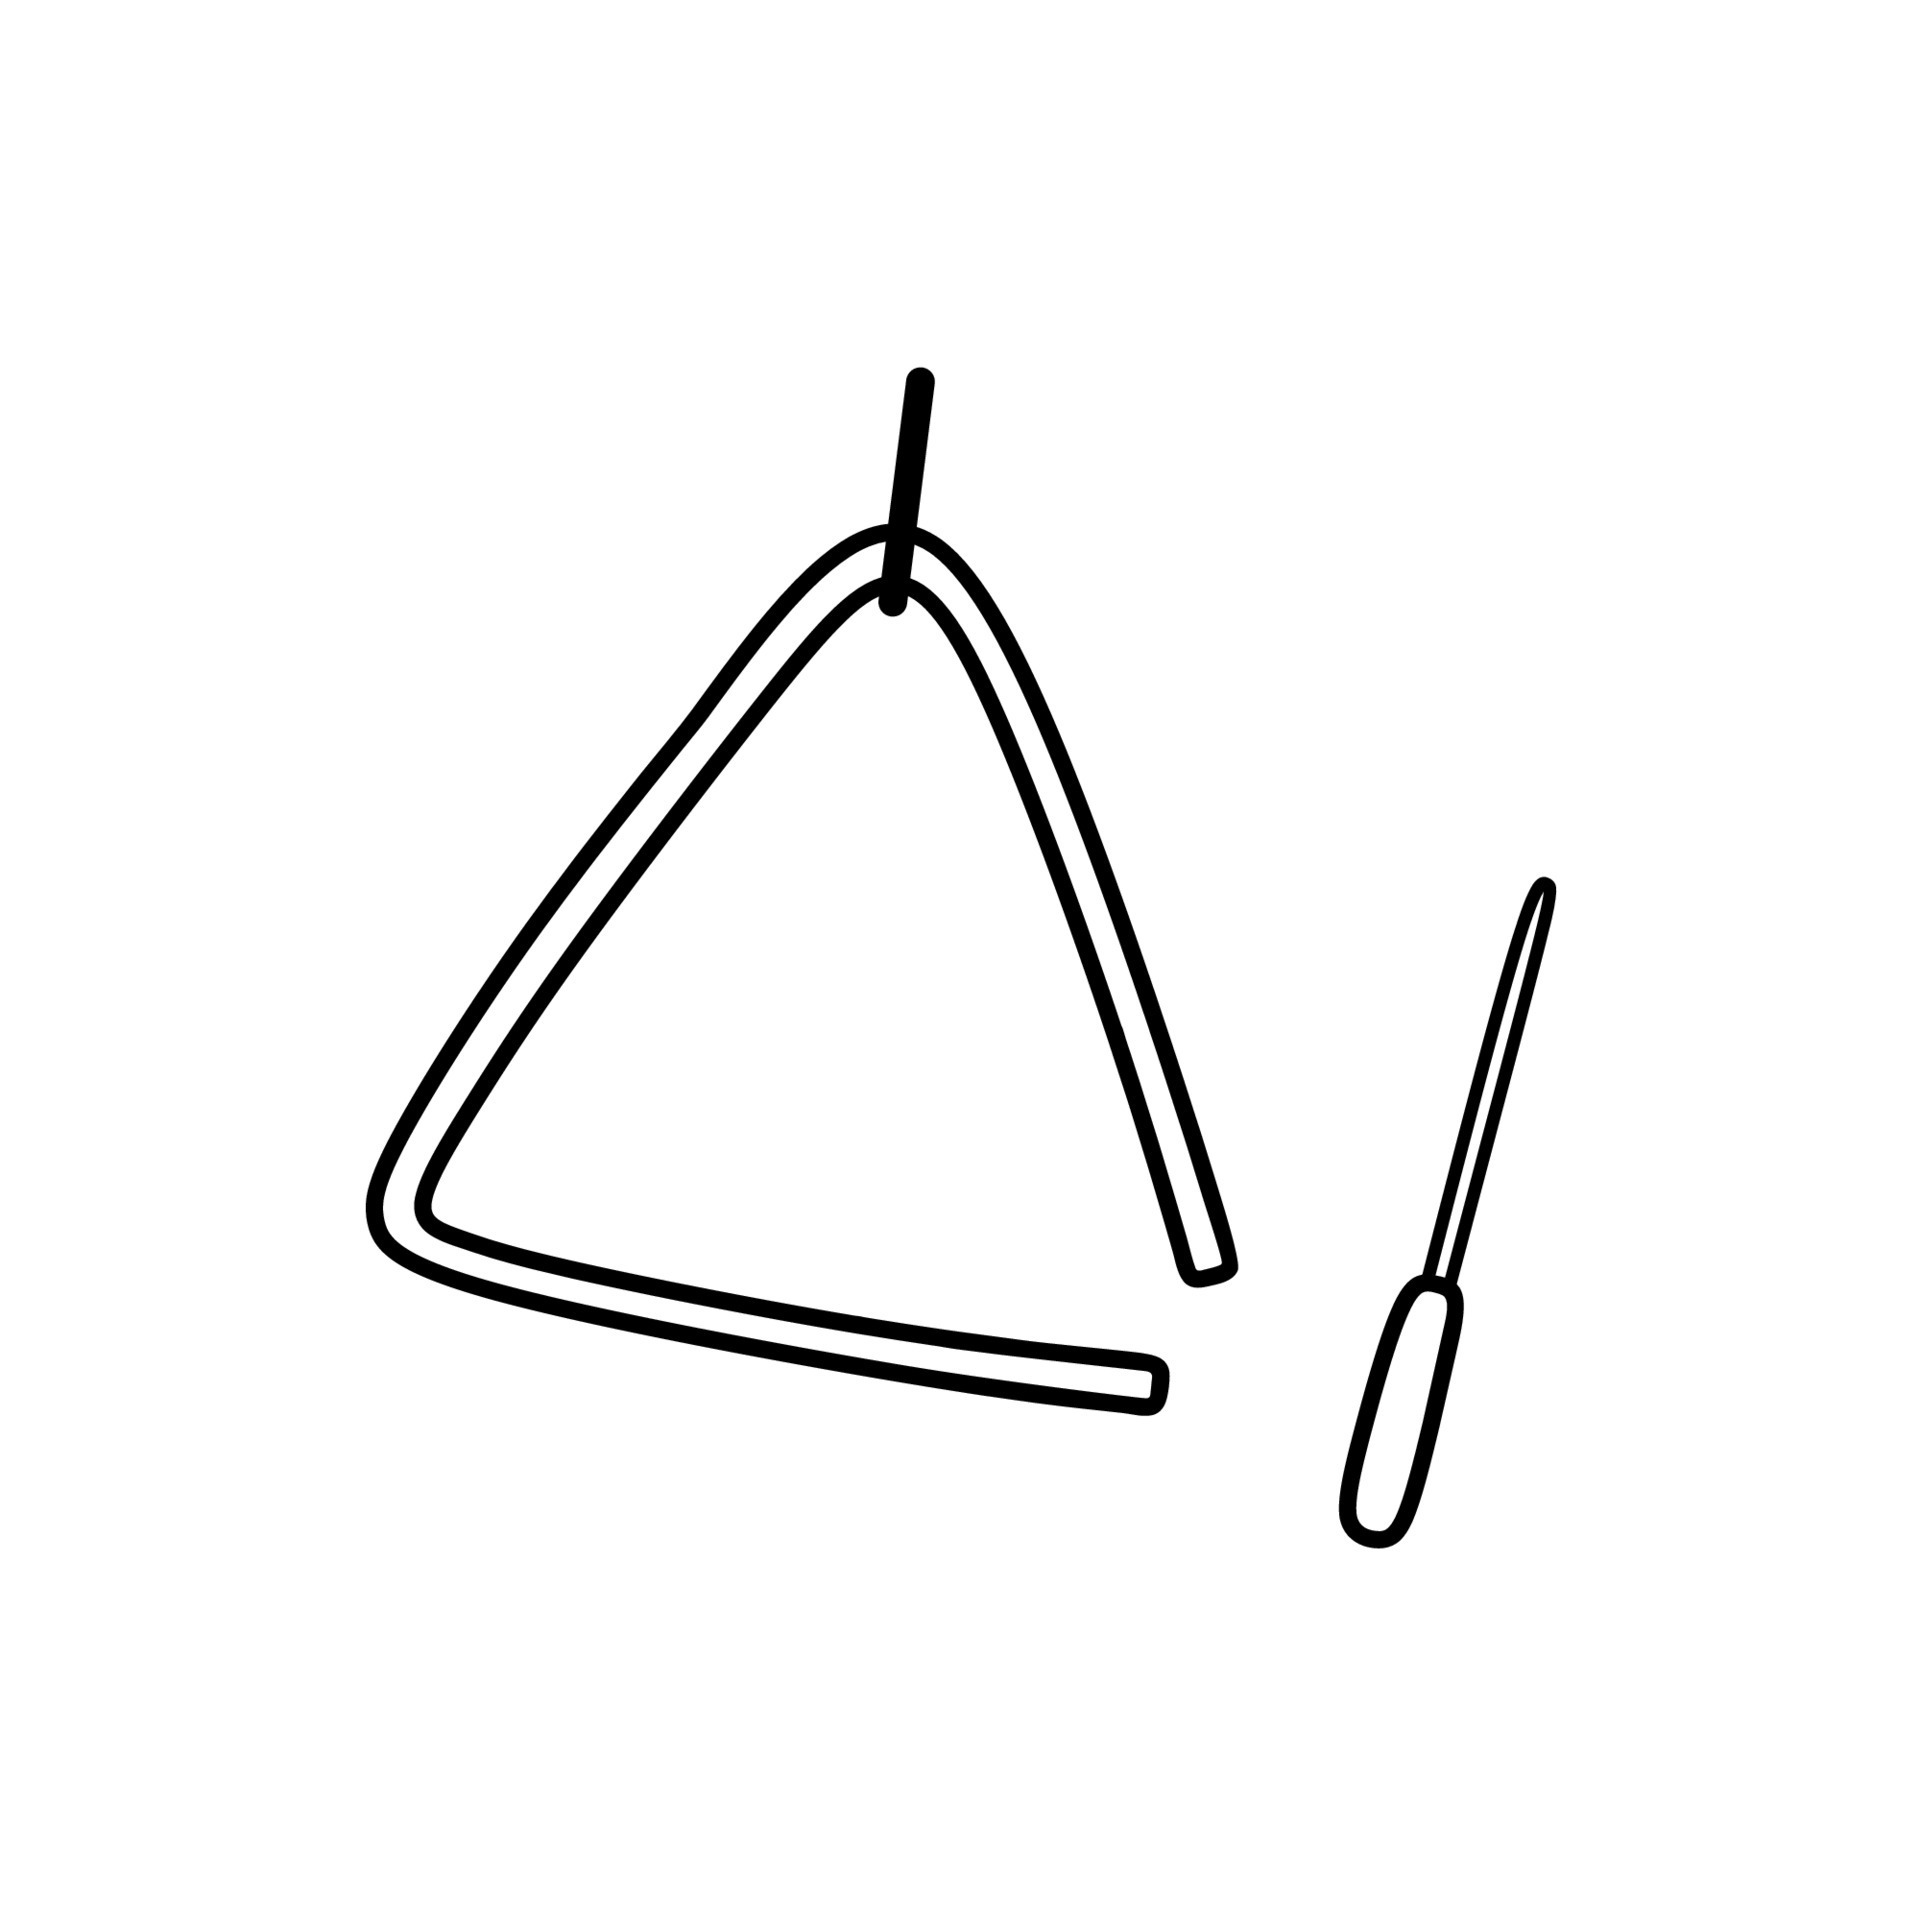 instrument de musique triangle isolé sur fond blanc. illustration